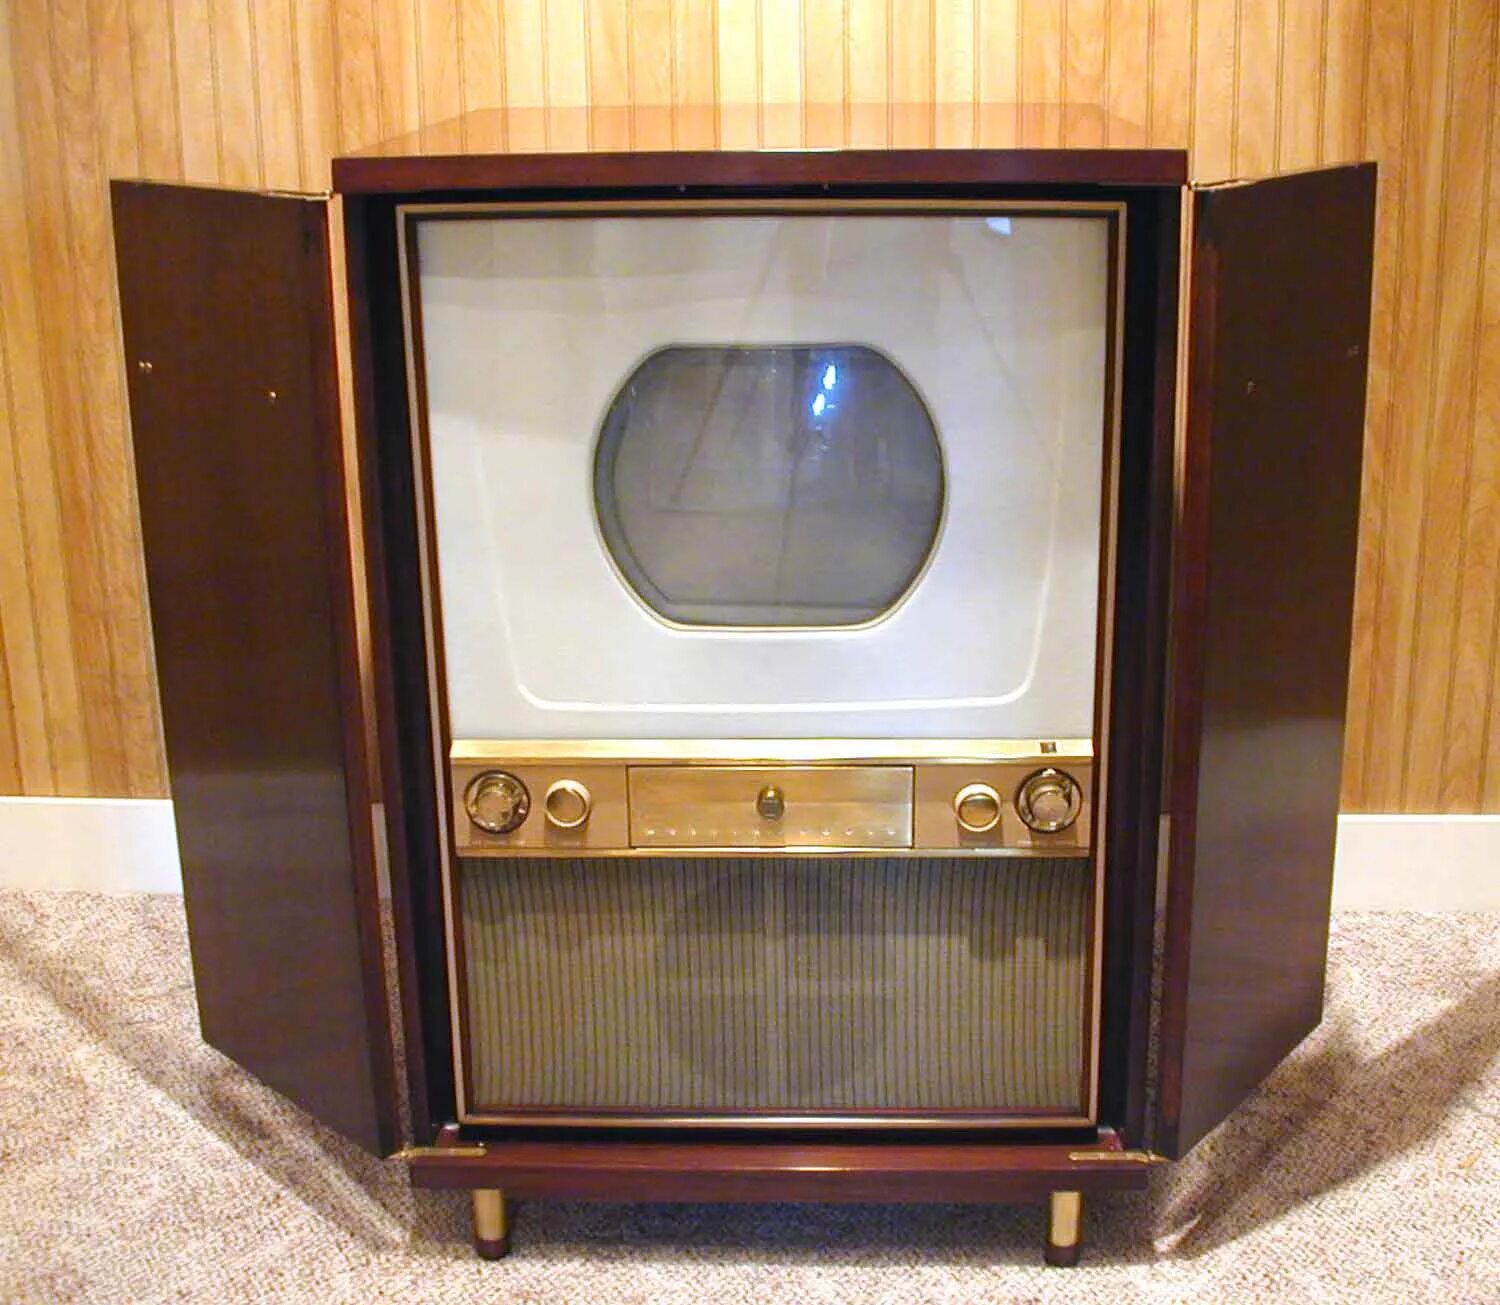 1 телевизор в мире. Westinghouse h840ck15. Первый цветной телевизор 1954. Телевизор Авангард 1954. Цветной телевизор Зенит 1954.